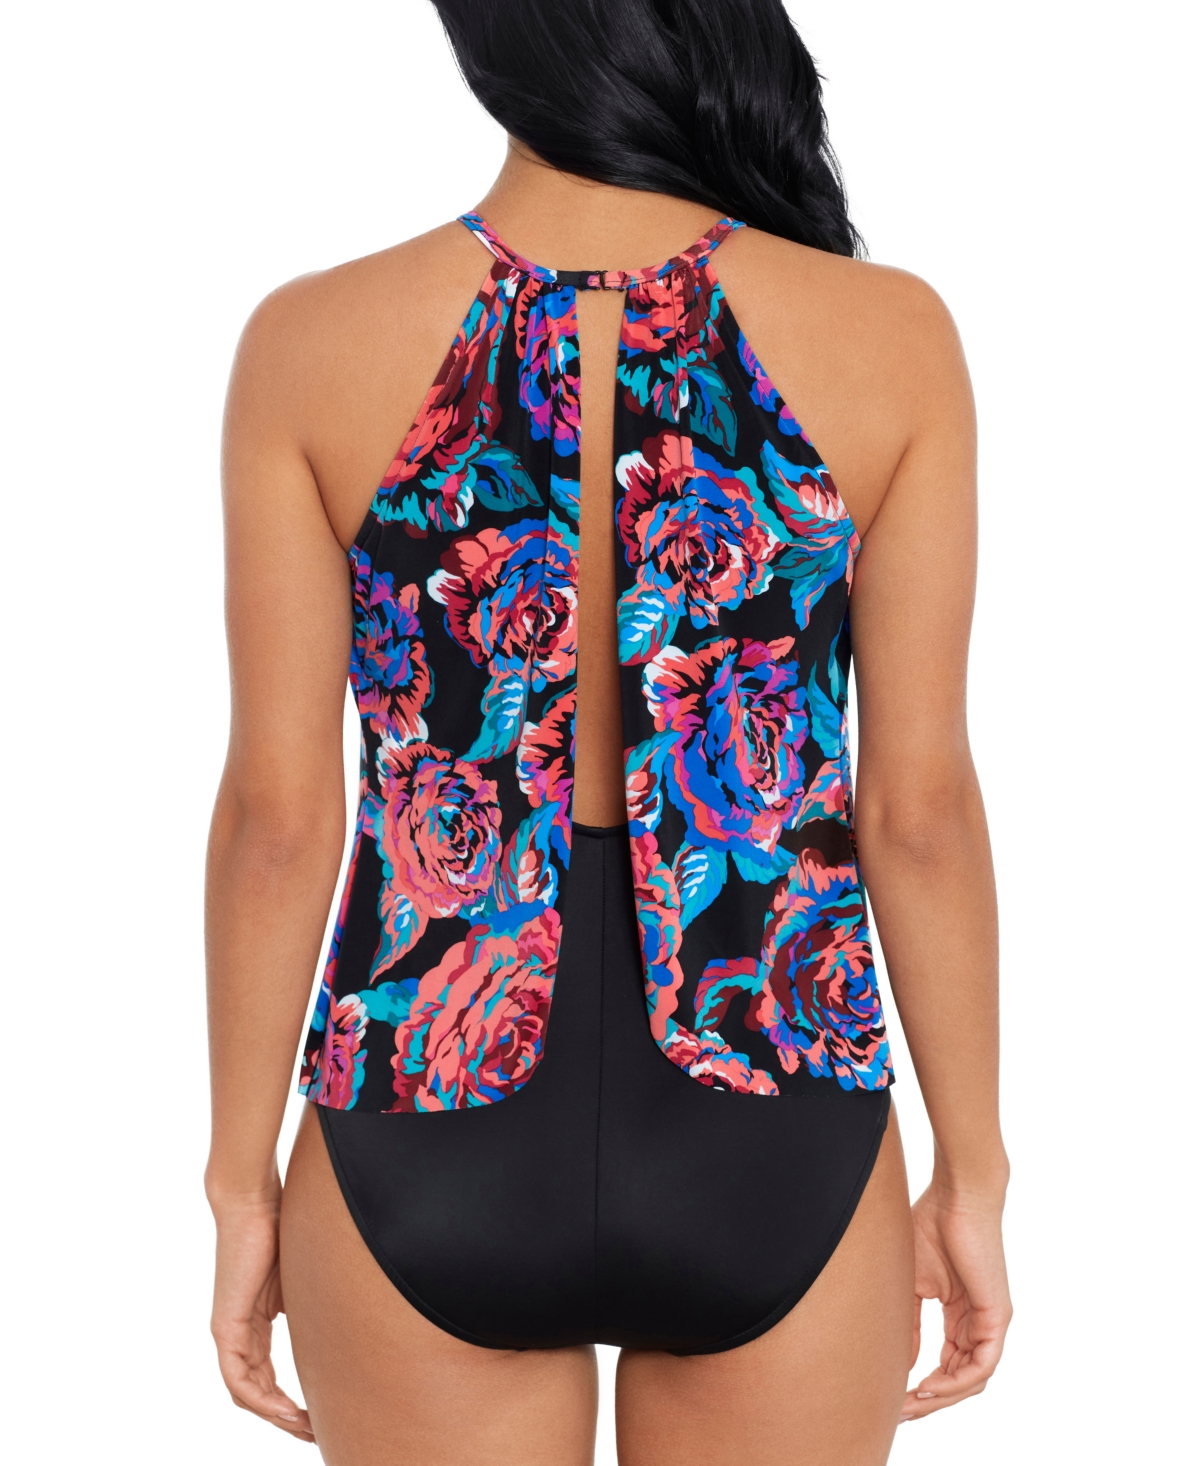 Shop Magicsuit Women's Sonic Blooms Aubrey One-piece Swimsuit